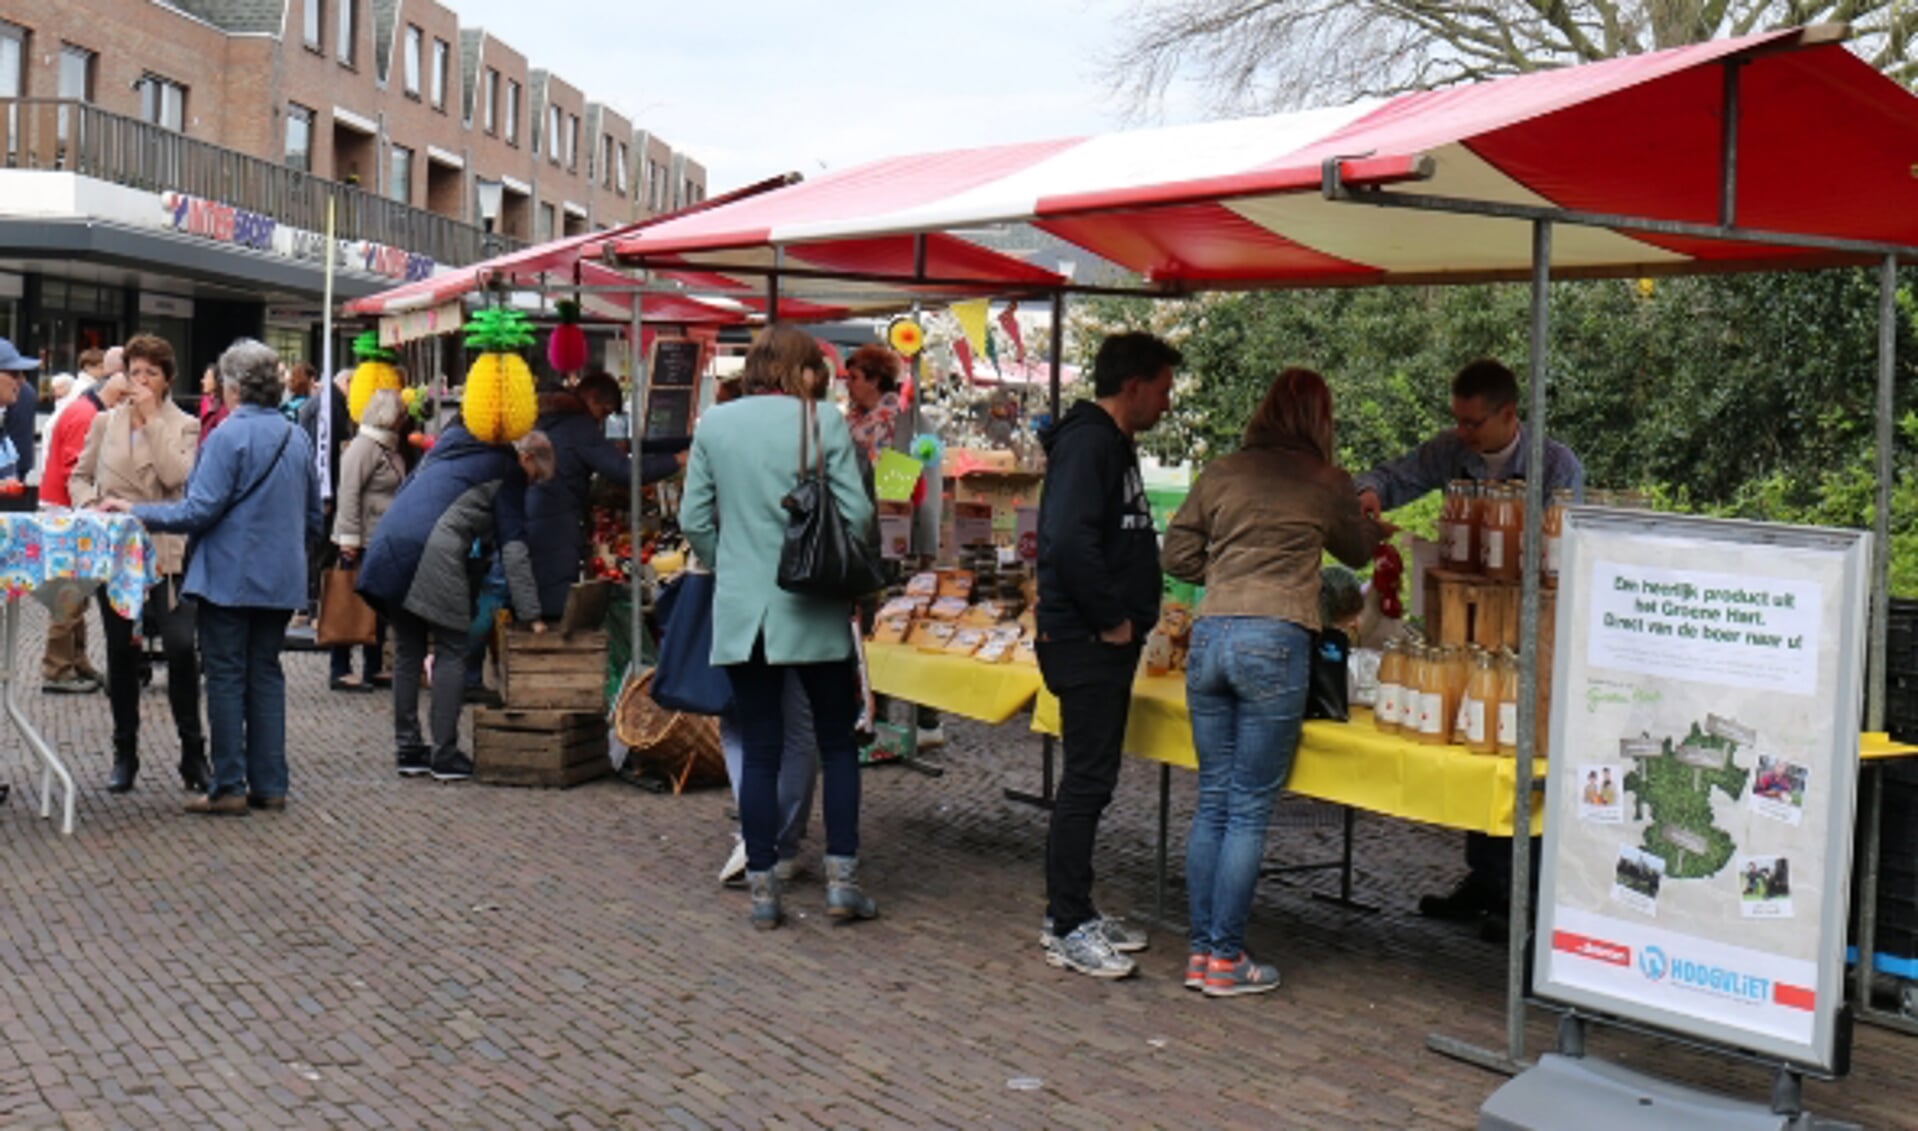 Streekmarkt het Beste van Berkel is een markt waar lokale winkels, tuinders en boeren hun producten kunnen tonen en verkopen. 